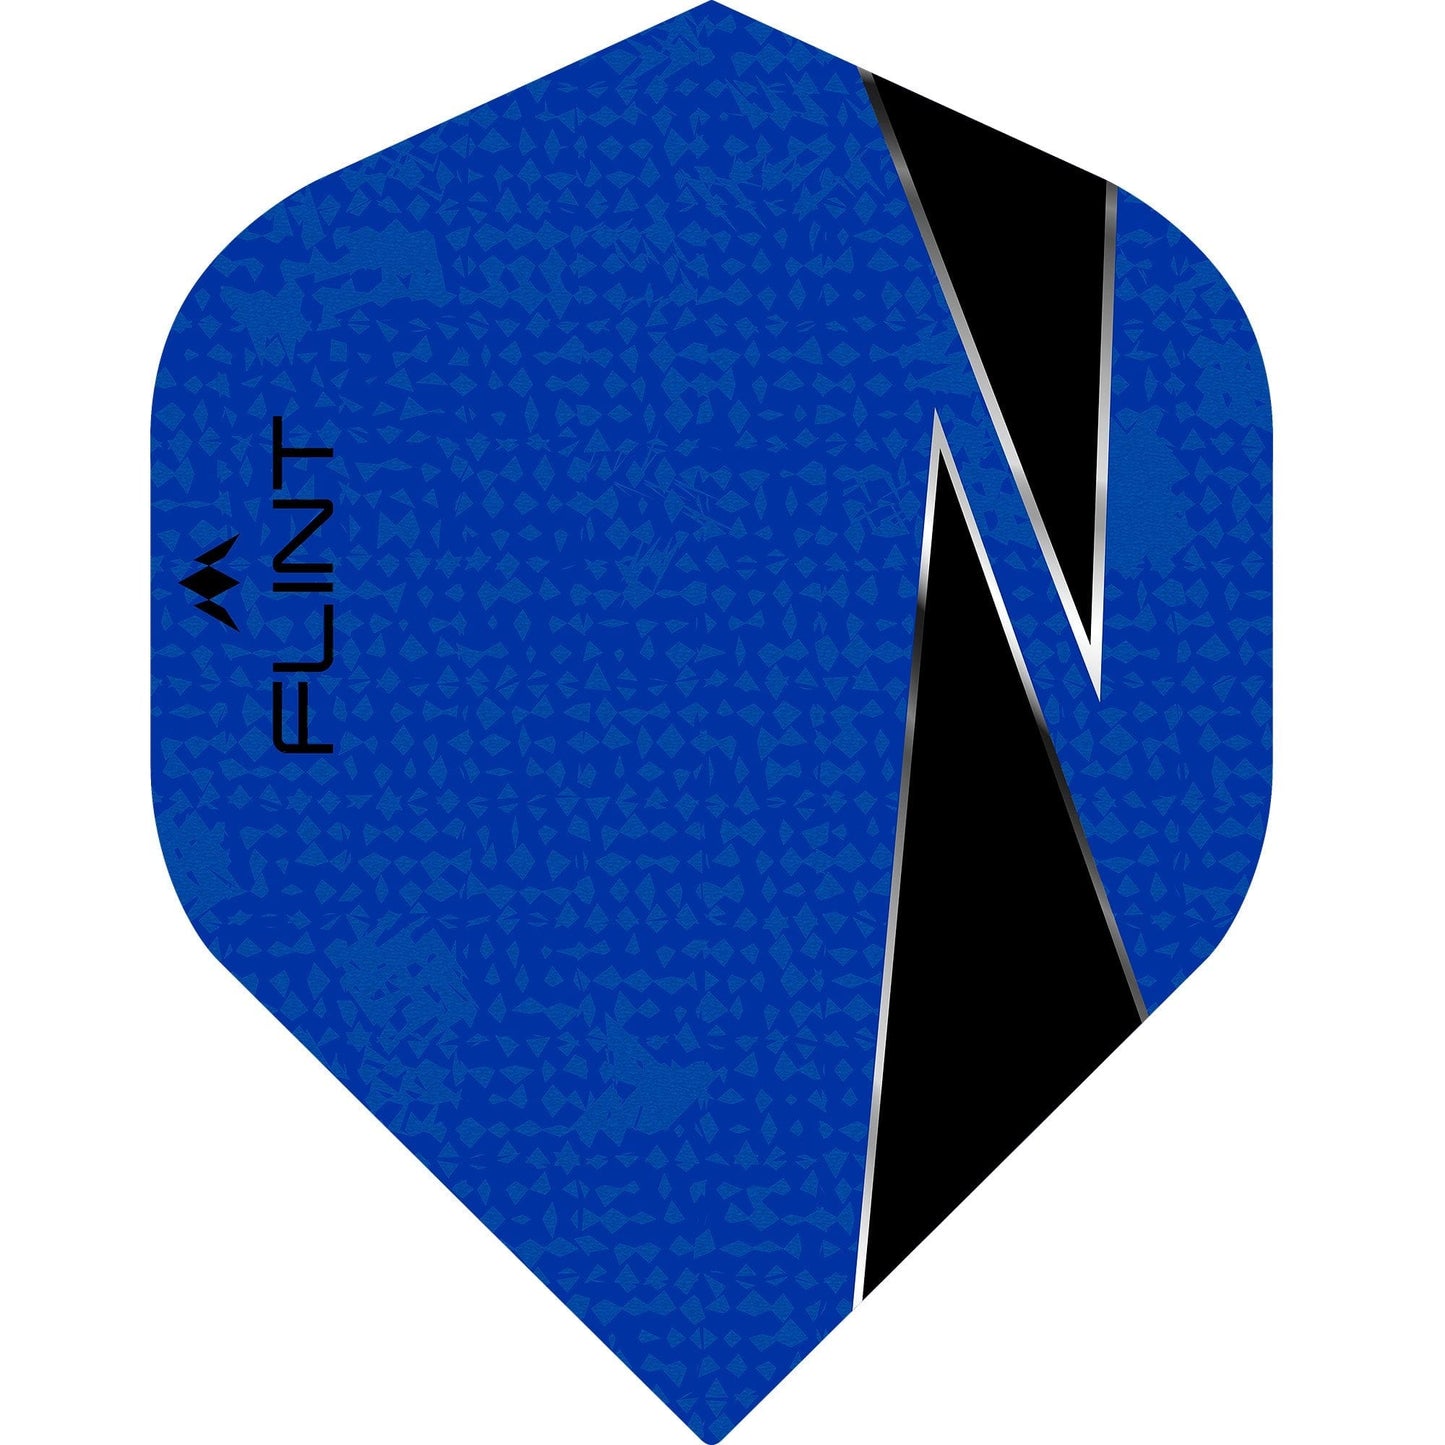 Mission Flint-X Dart Flights - 100 Micron - No2 - Std Blue